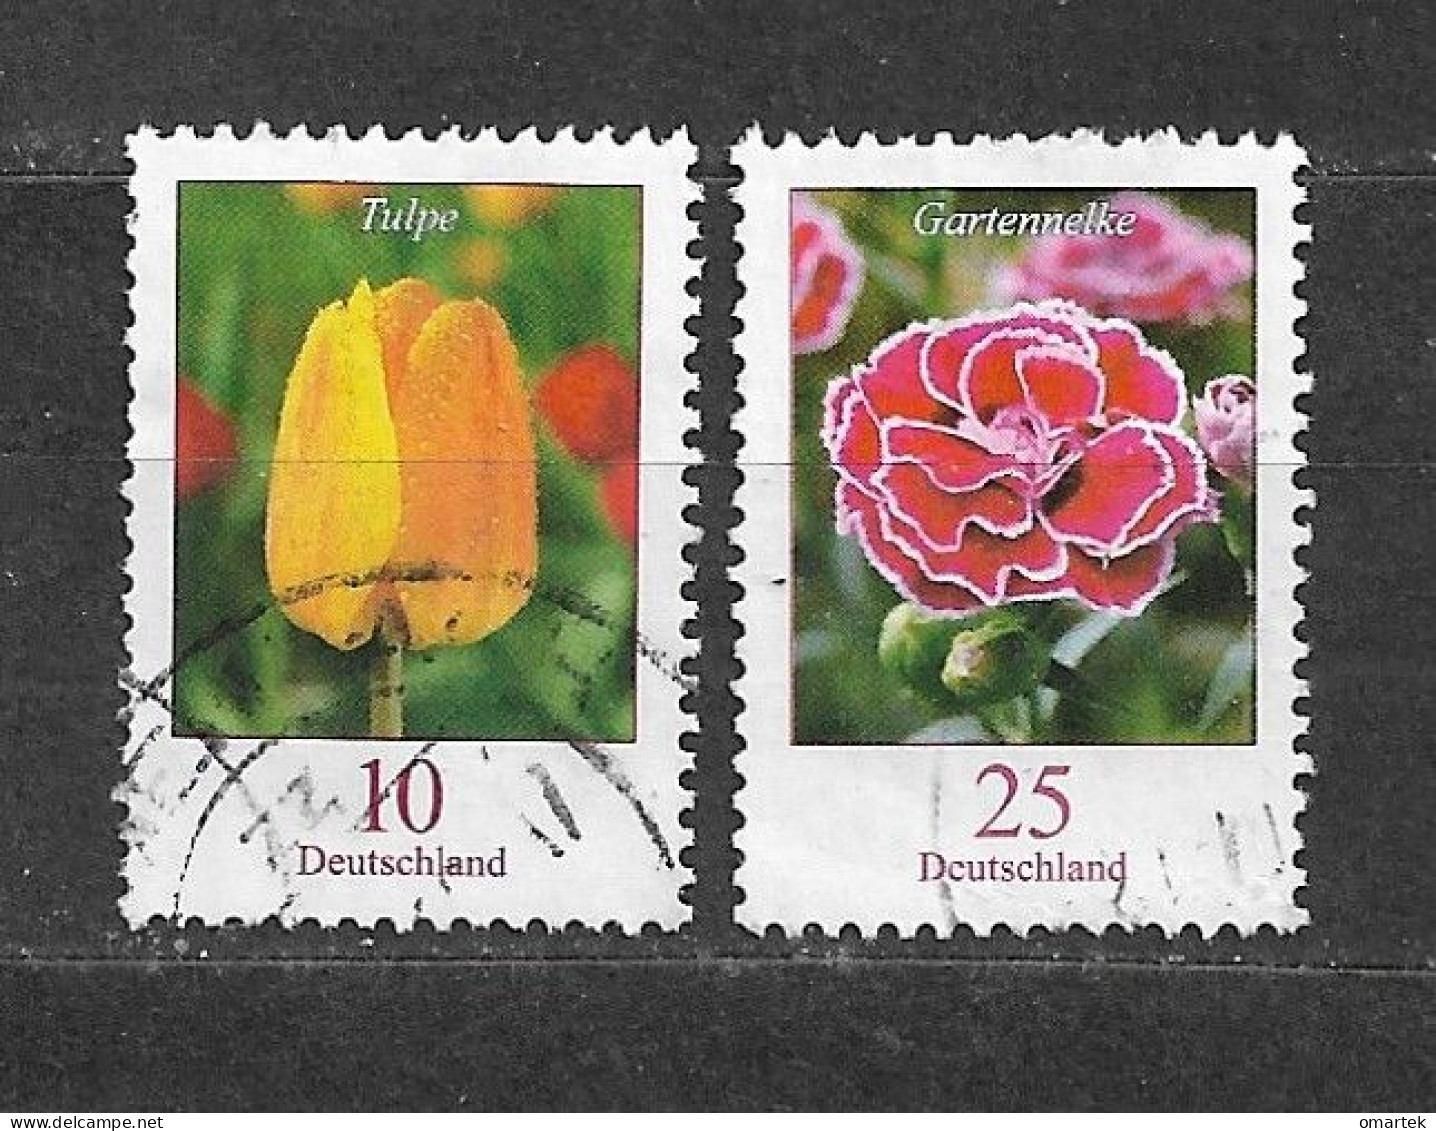 Deutschland Germany BRD 2005 ⊙ Mi 2462, 2484 Tulpe, Gartennelke - Gebraucht